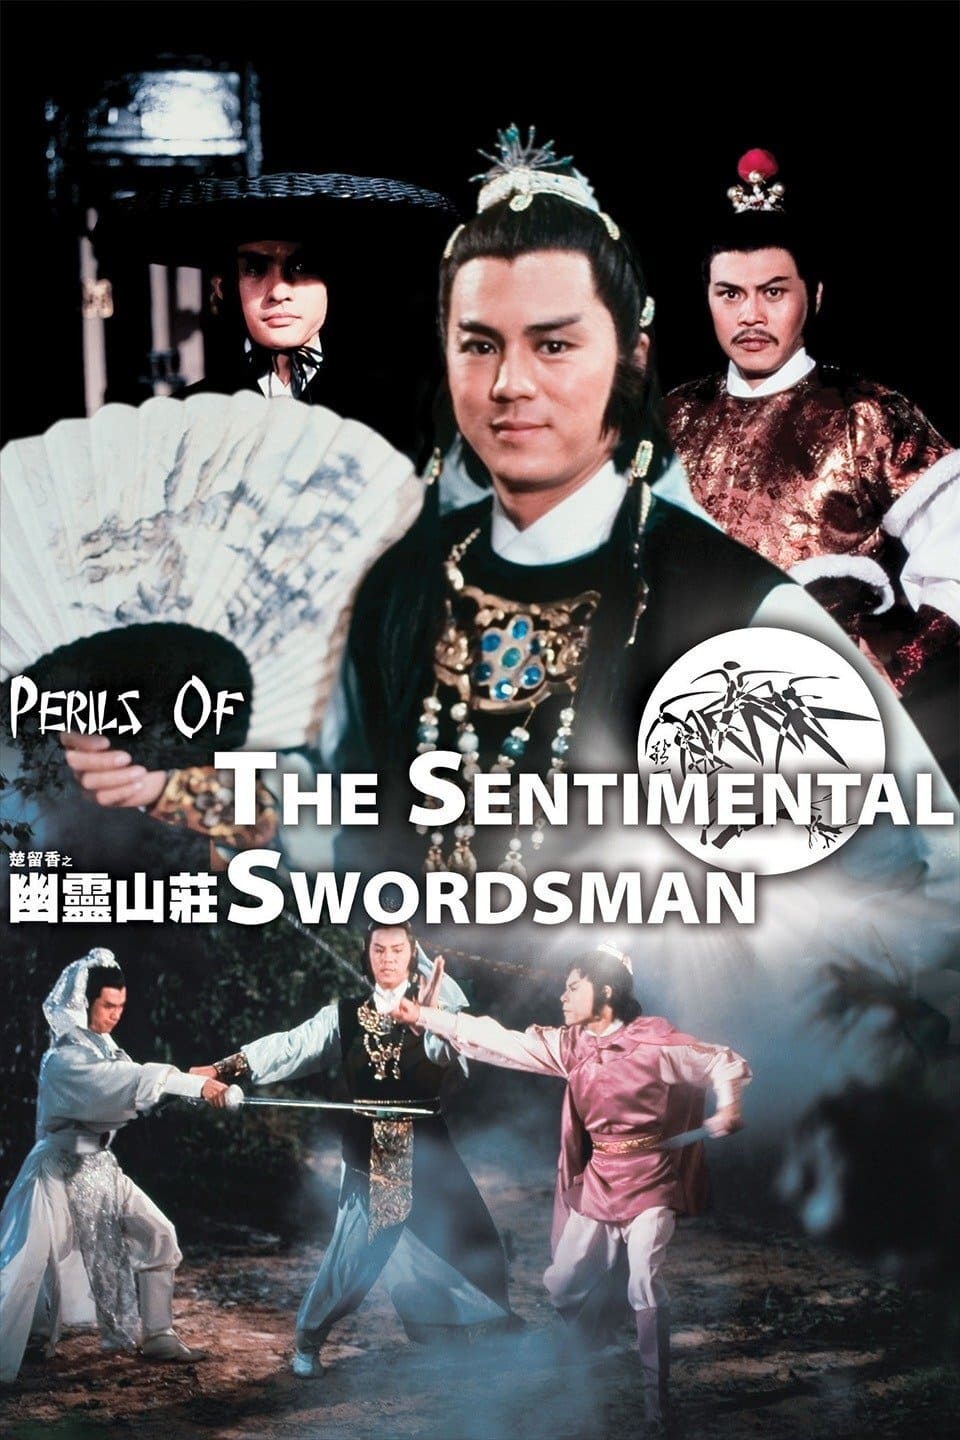 Perils of the Sentimental Swordsman (1982)